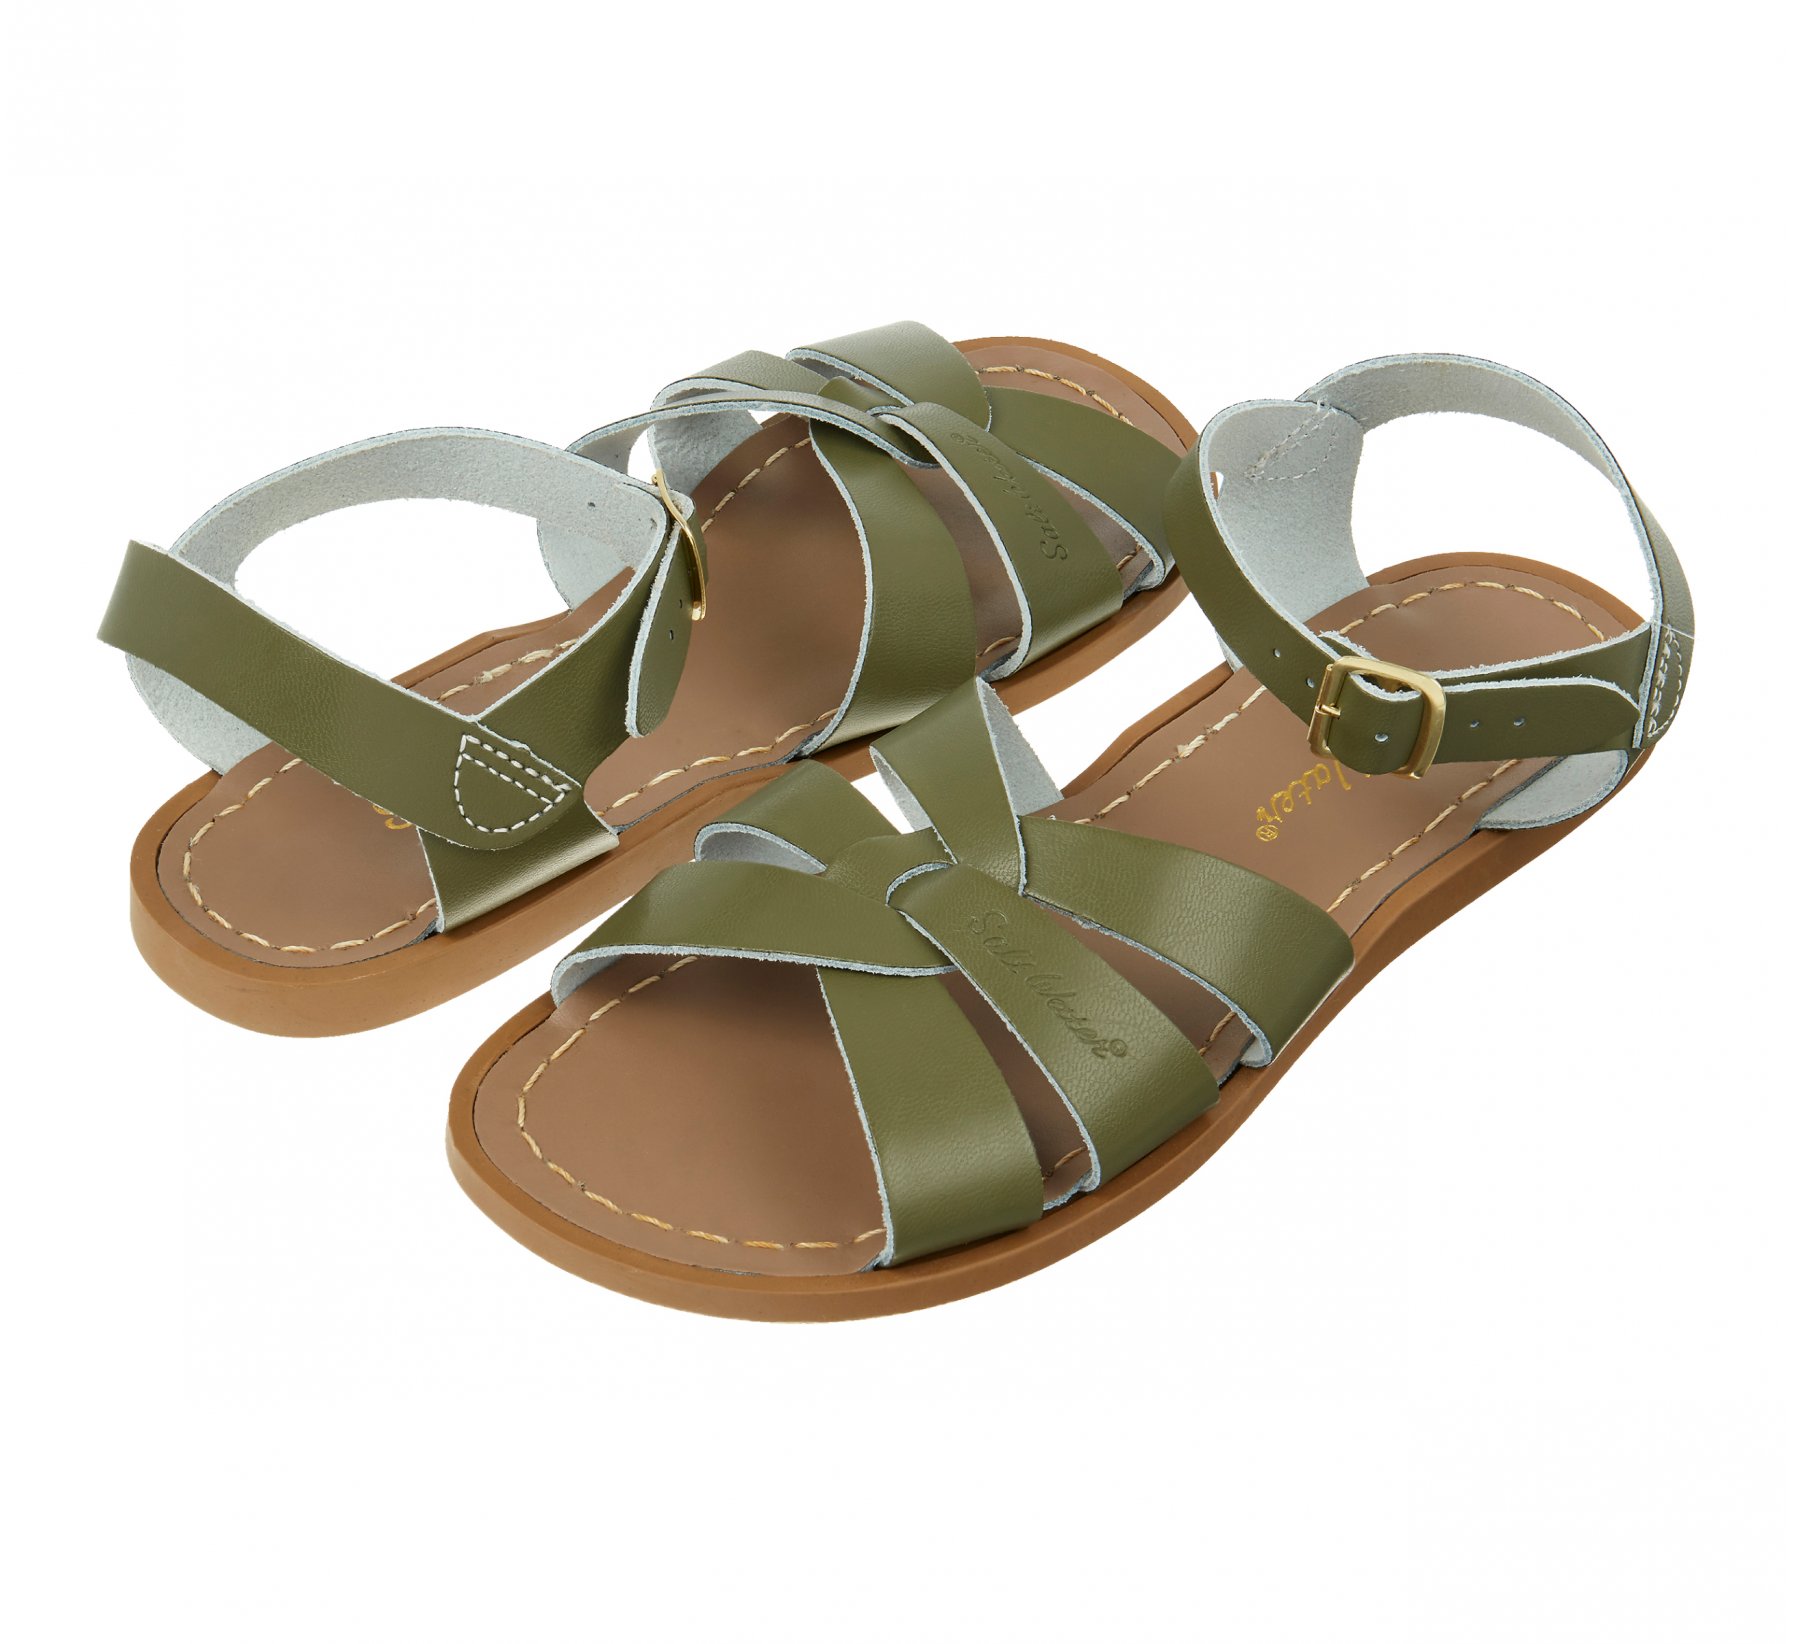 Original Olive Kids Sandals - Salt Water Sandals